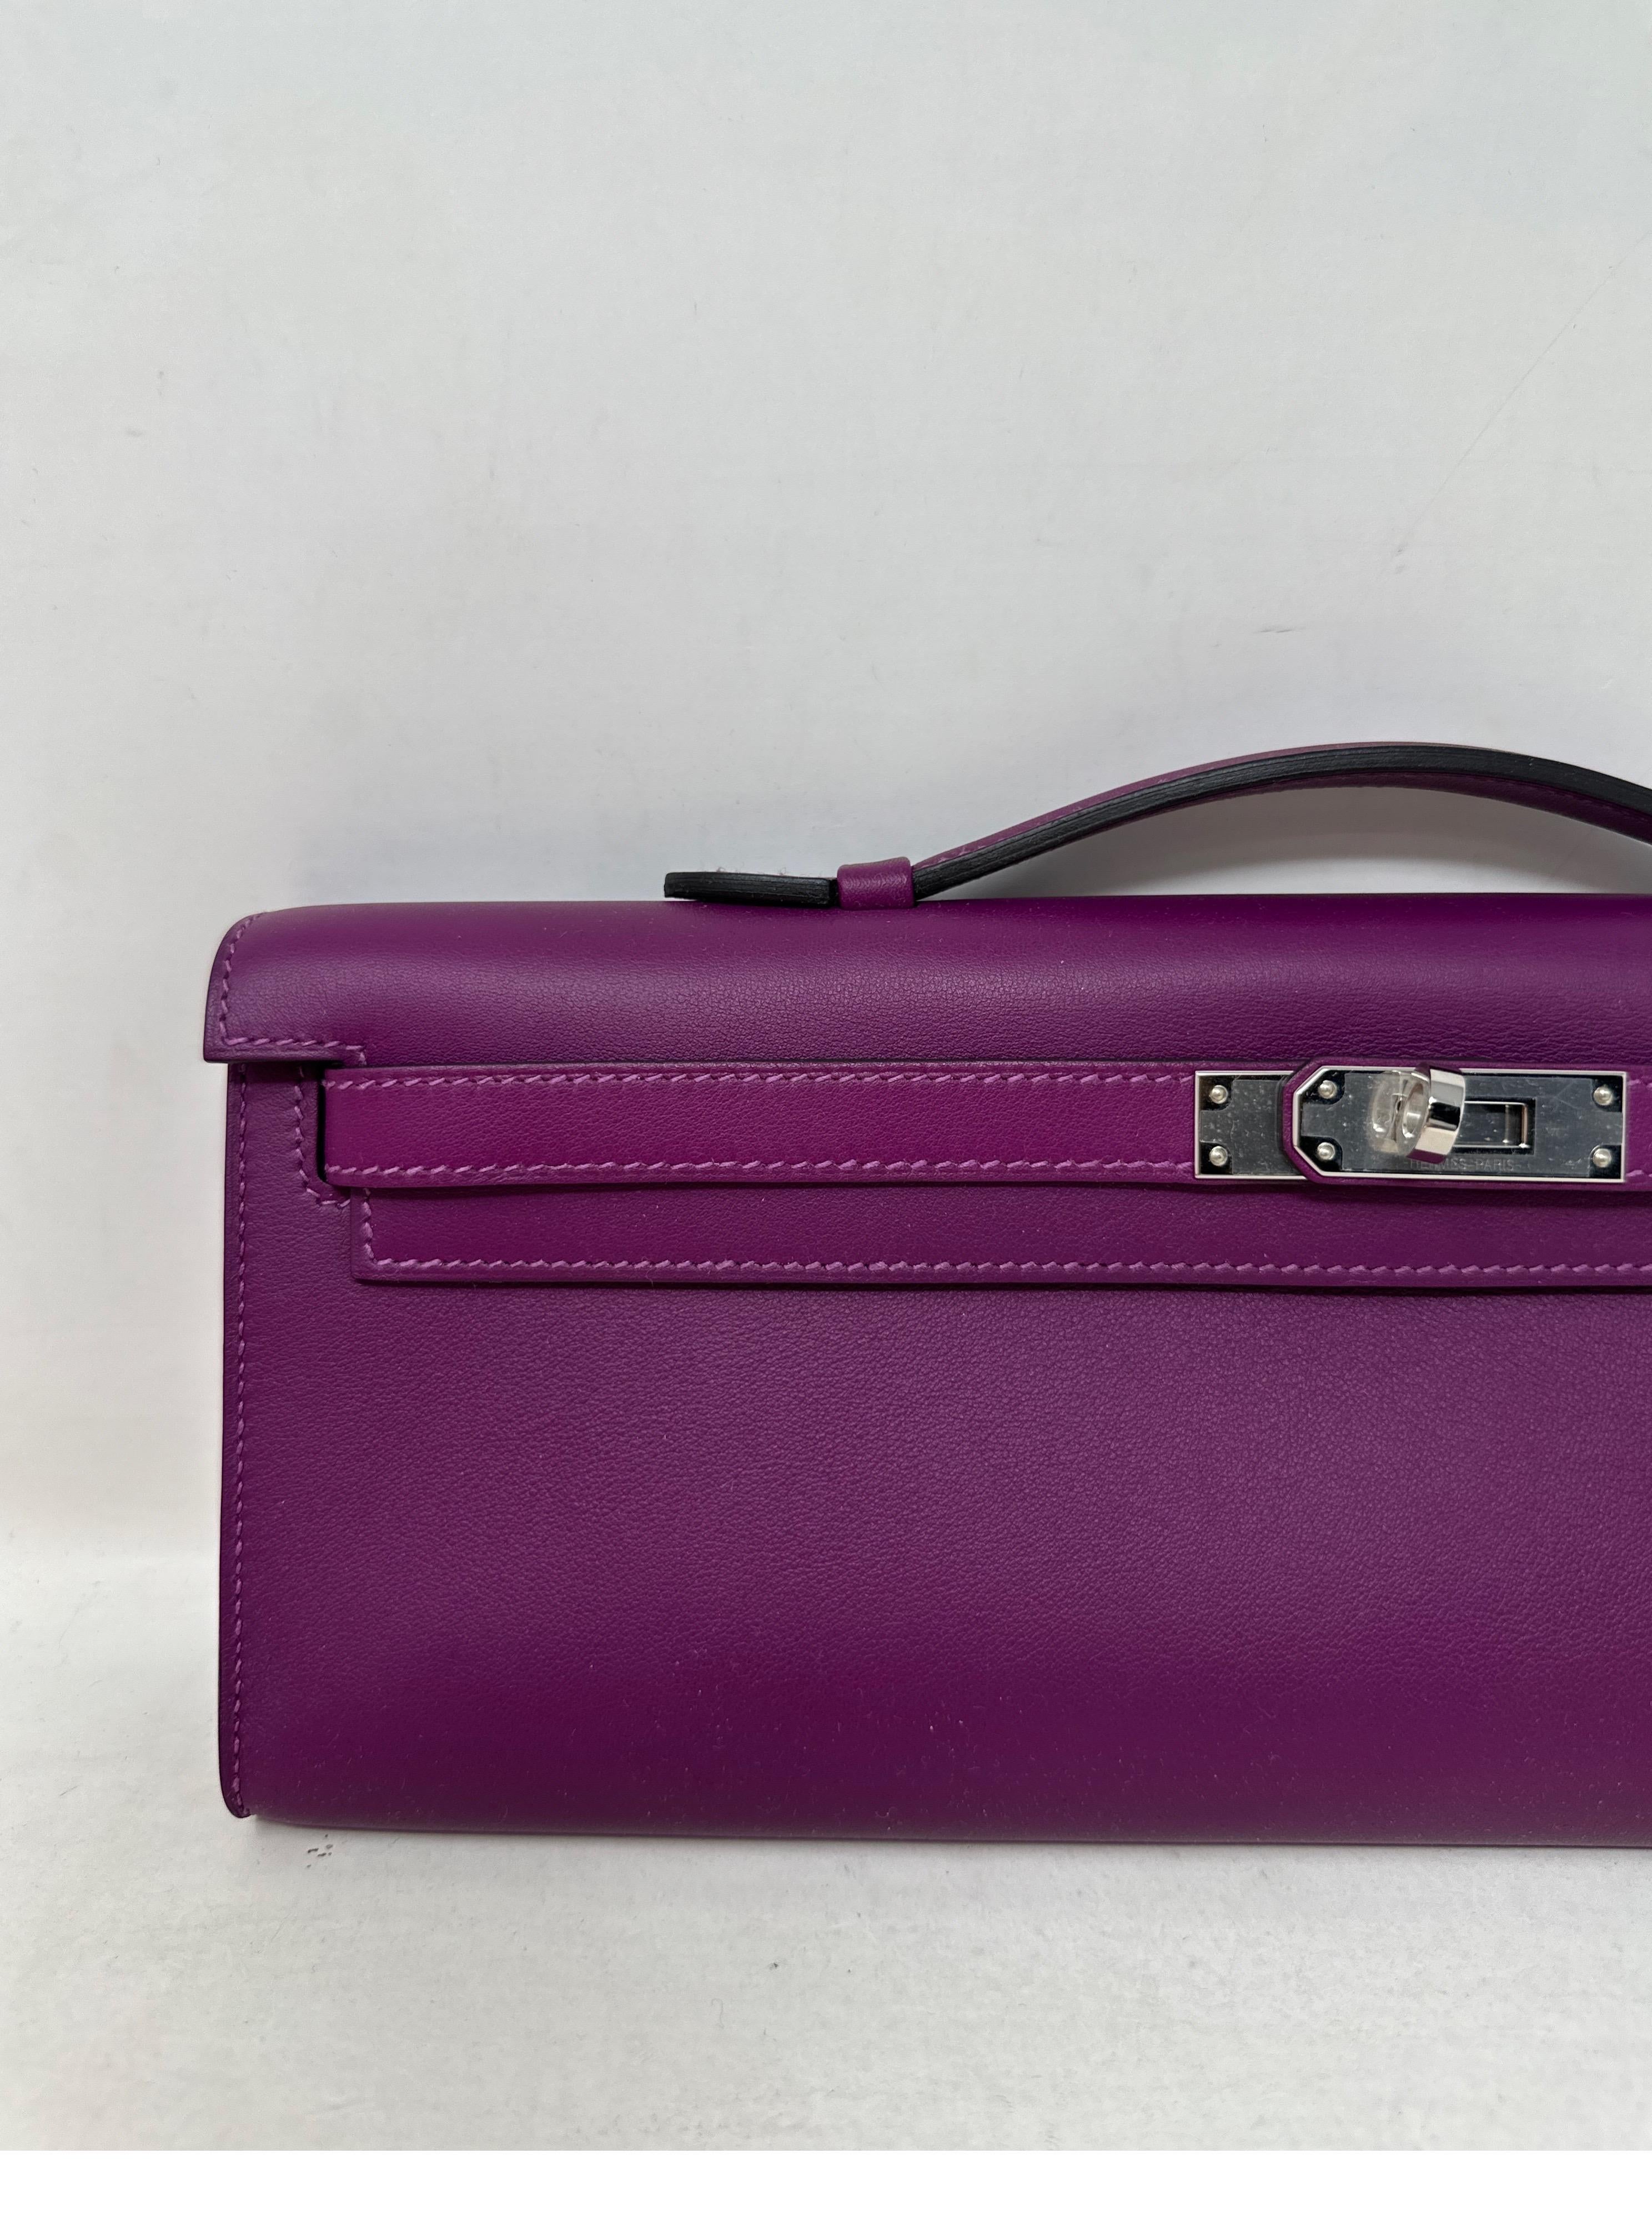 Hermès - Pochette Kelly violette  Excellent état à Athens, GA